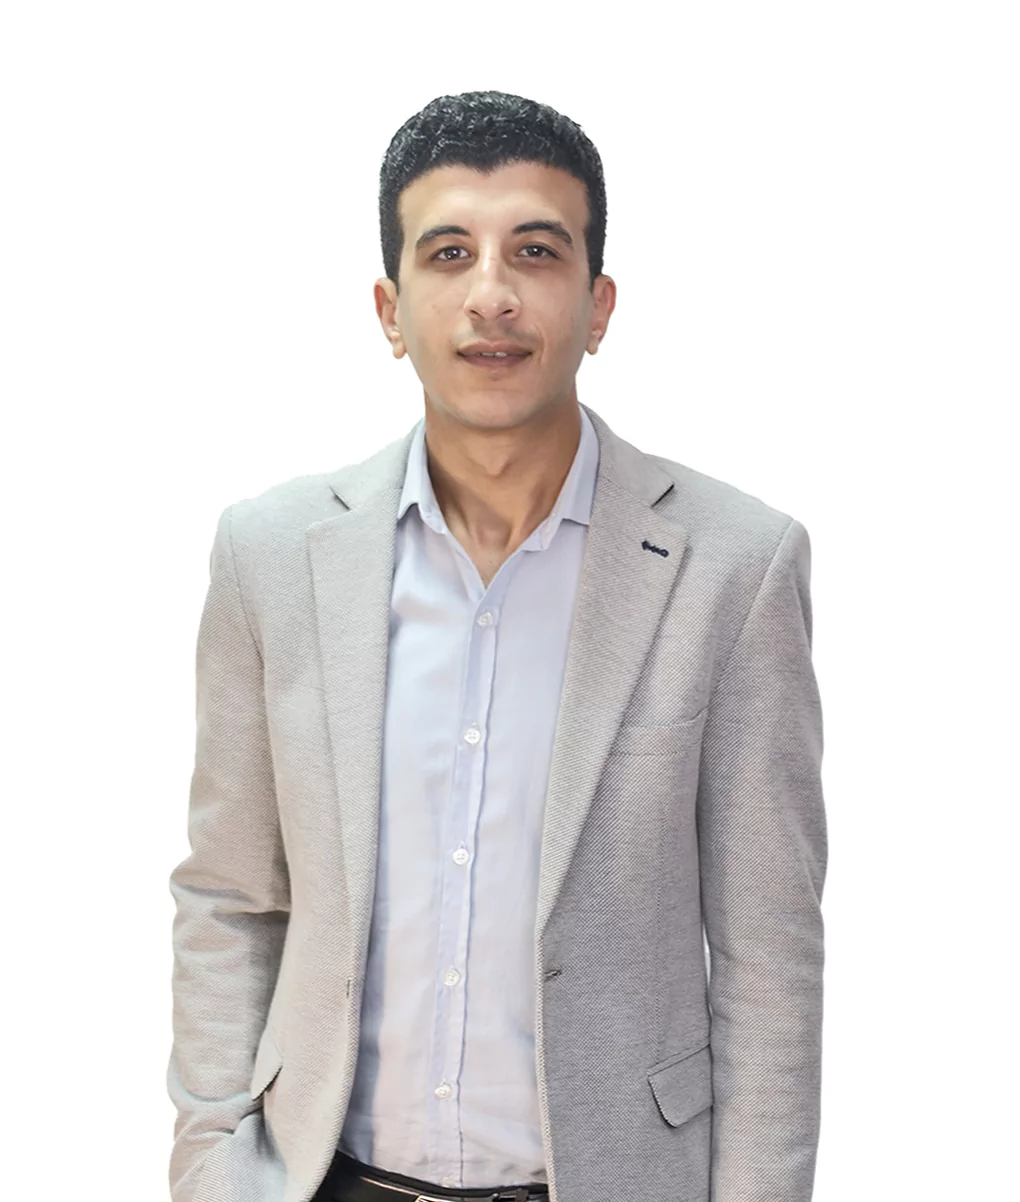 Omar Elshenawy